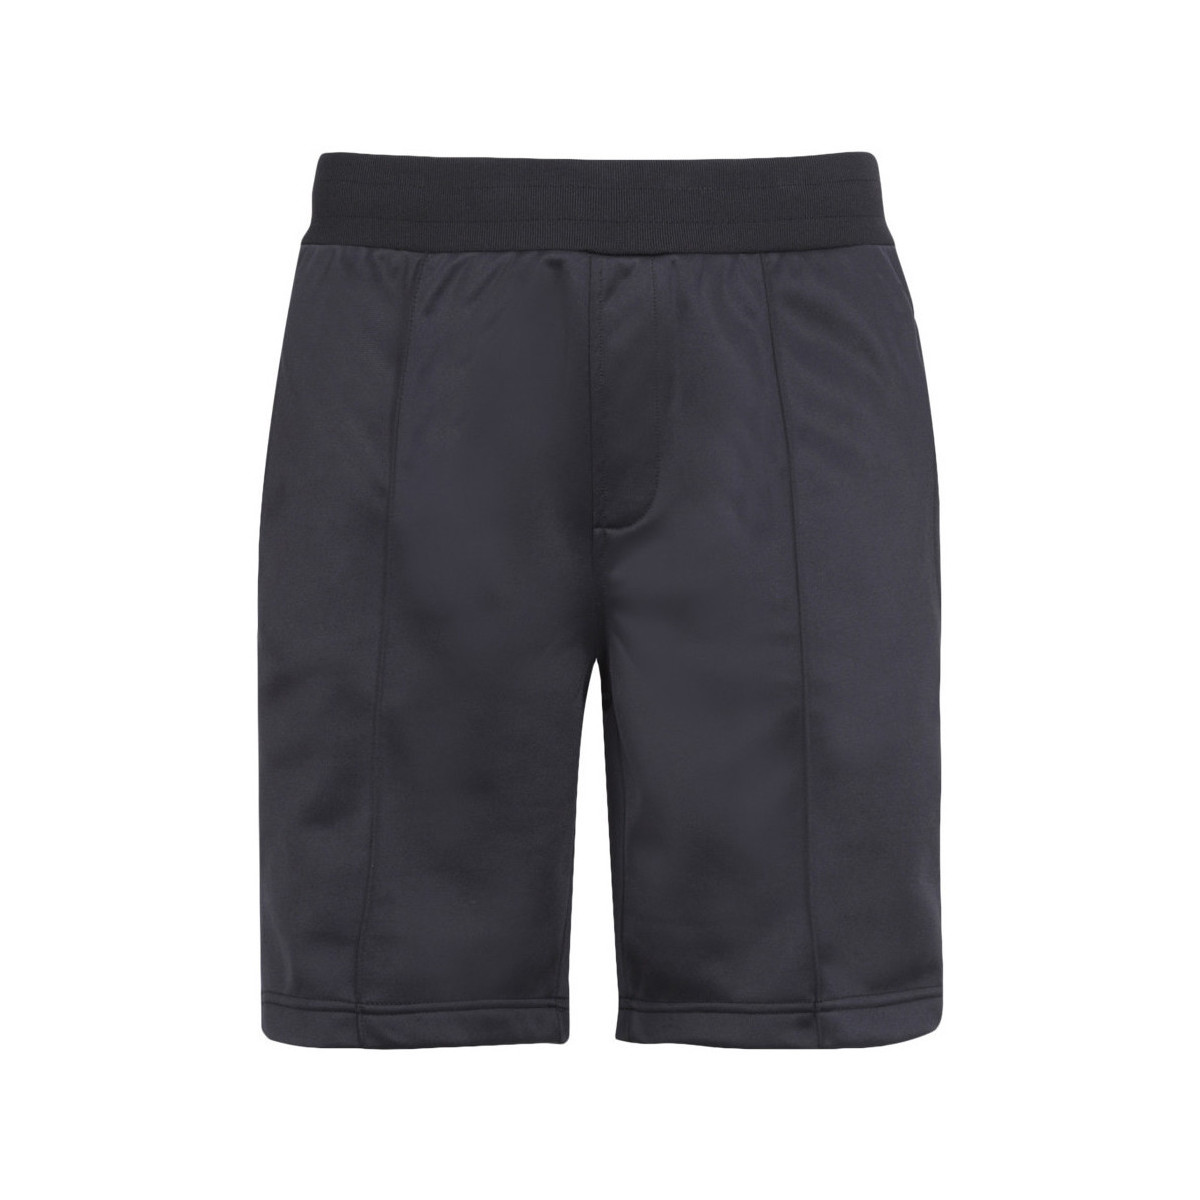 Vêtements Homme Shorts Miss / Bermudas Horspist Short  noir - SONIC S10 BLACK Noir